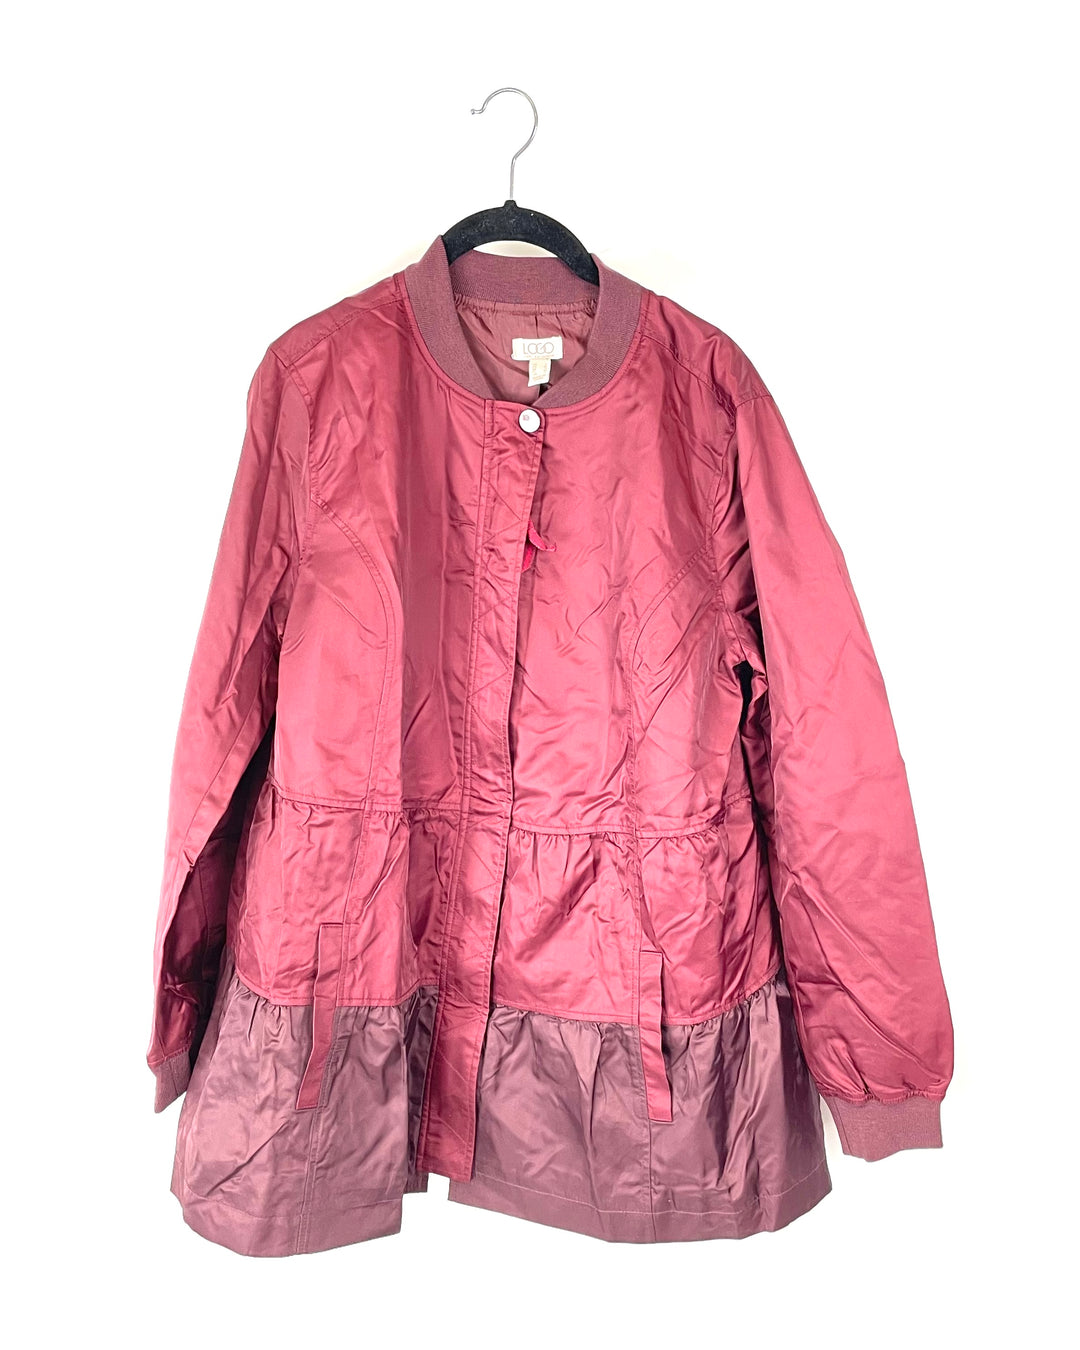 Red Windbreaker Jacket - Size 6-8